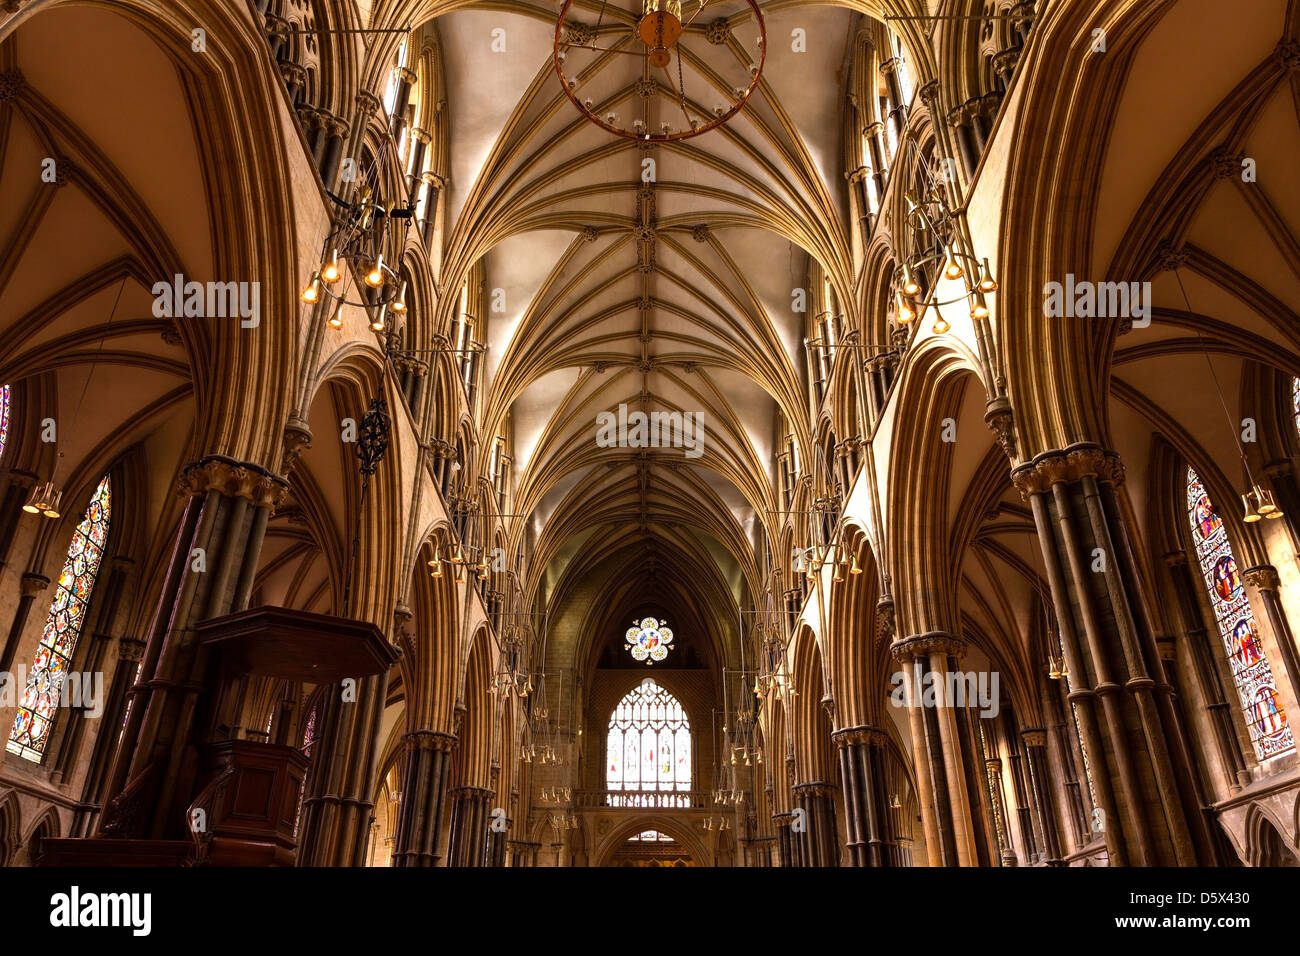 Spitz, gotische Mauerwerk Bögen, Steinsäulen und gewölbte Decken über dem Hauptschiff der Kathedrale von Lincoln, Lincolnshire, England, UK Stockfoto